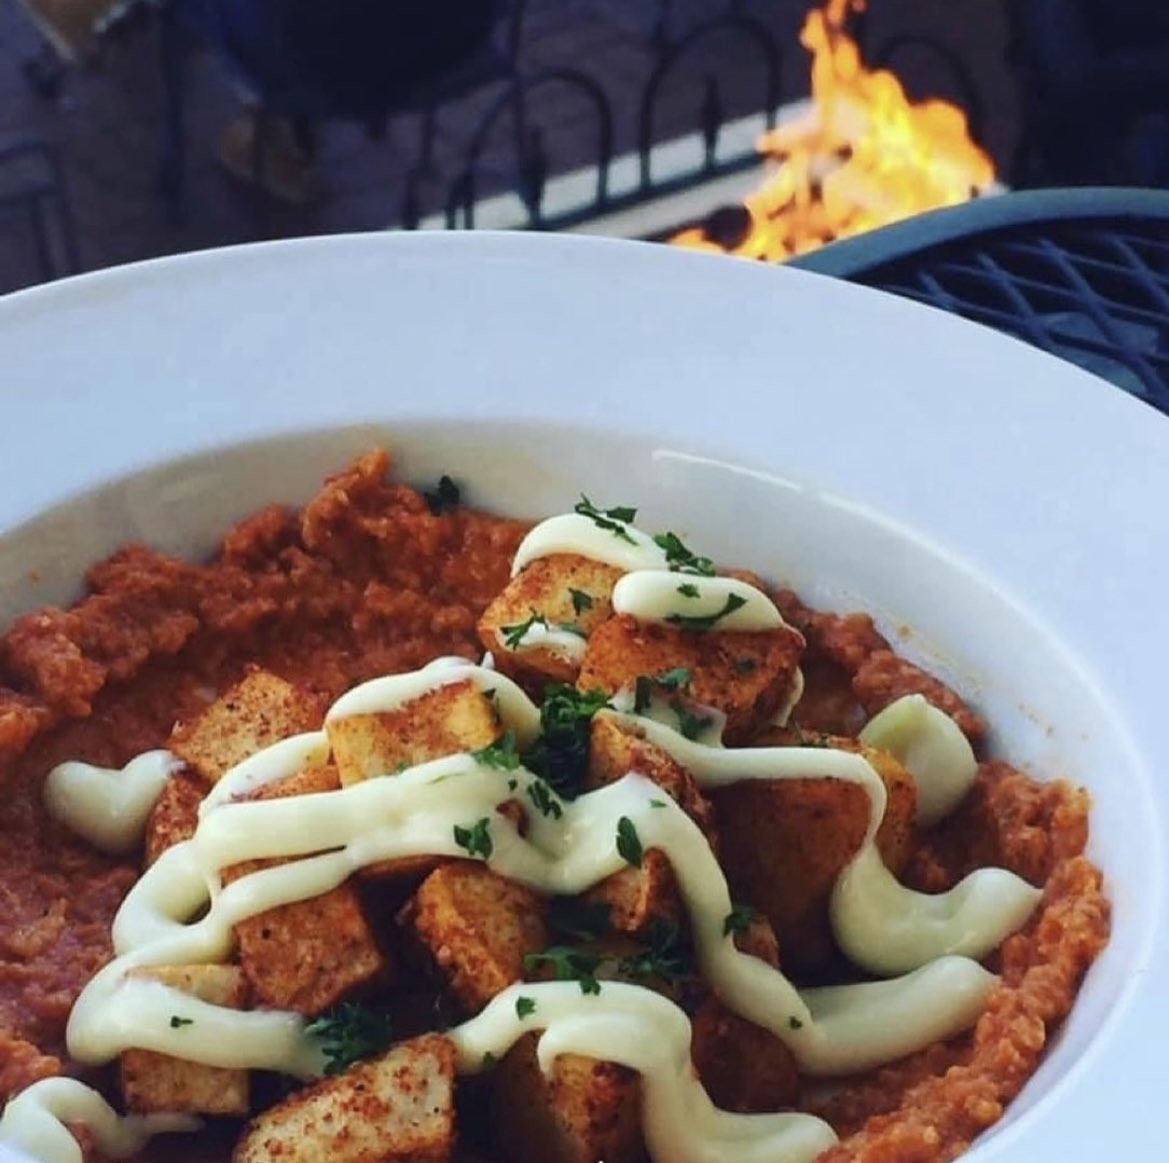 Tapas time @bellavinowinebarstl  patatas bravas topped with Romesco sauce and aioli is Fire 🔥 #tapas #patatasbravas #winebar #foodie #tapaswithatwist #patio #firepit #datenight #stcharleseats